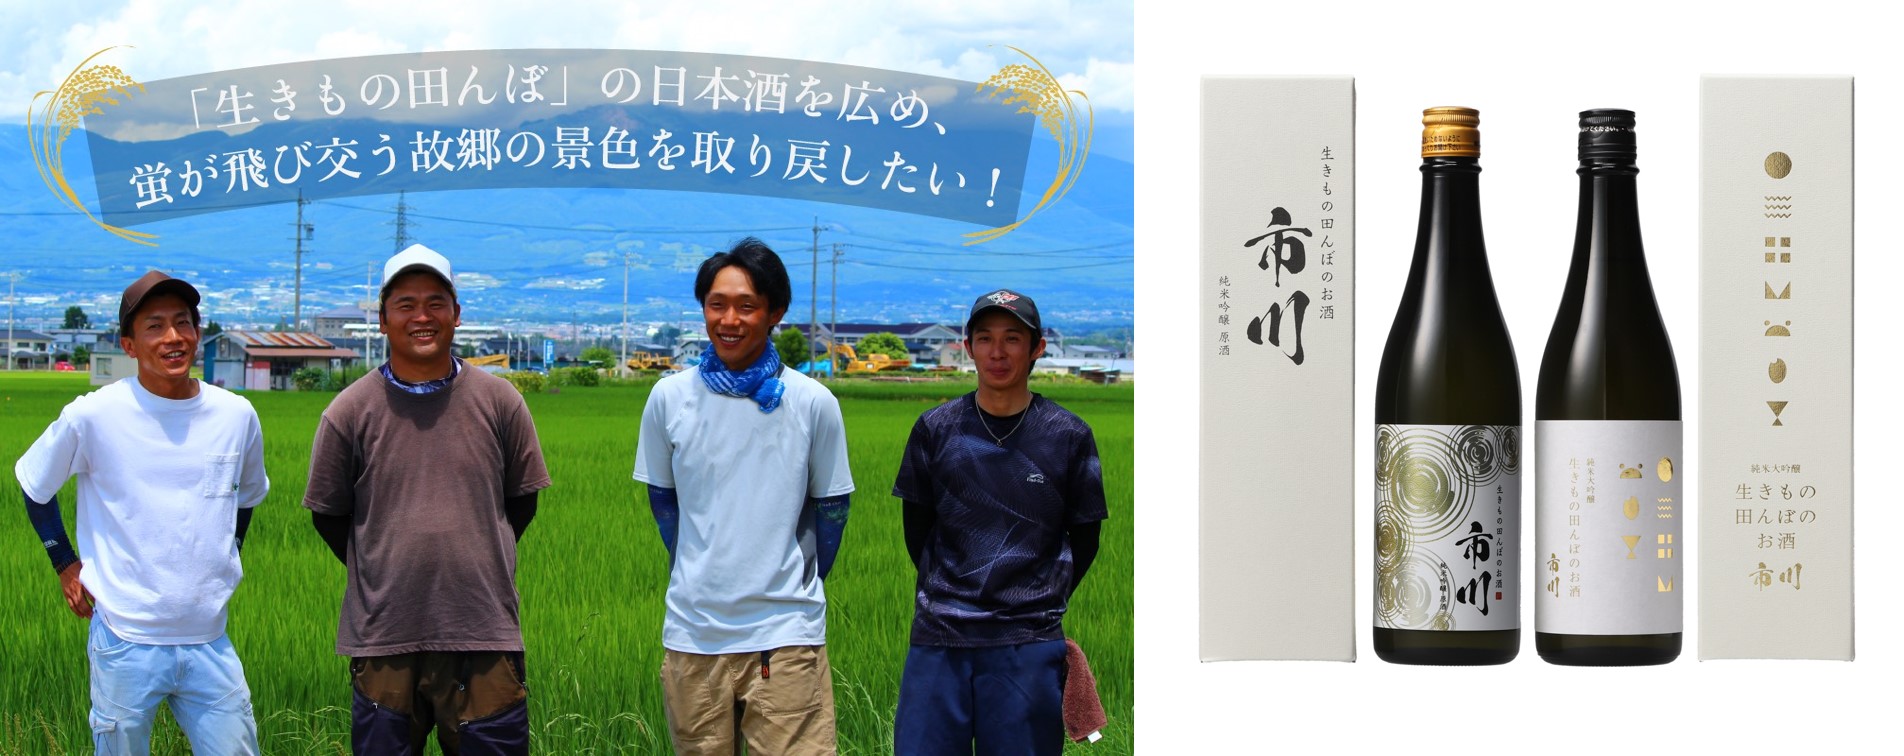 長野県佐久市の無農薬コシヒカリを100％使用した日本酒を醸造　「生きもの田んぼ」の魅力を伝えたいという想いのもとクラウドファンディングを通じた支援を実施